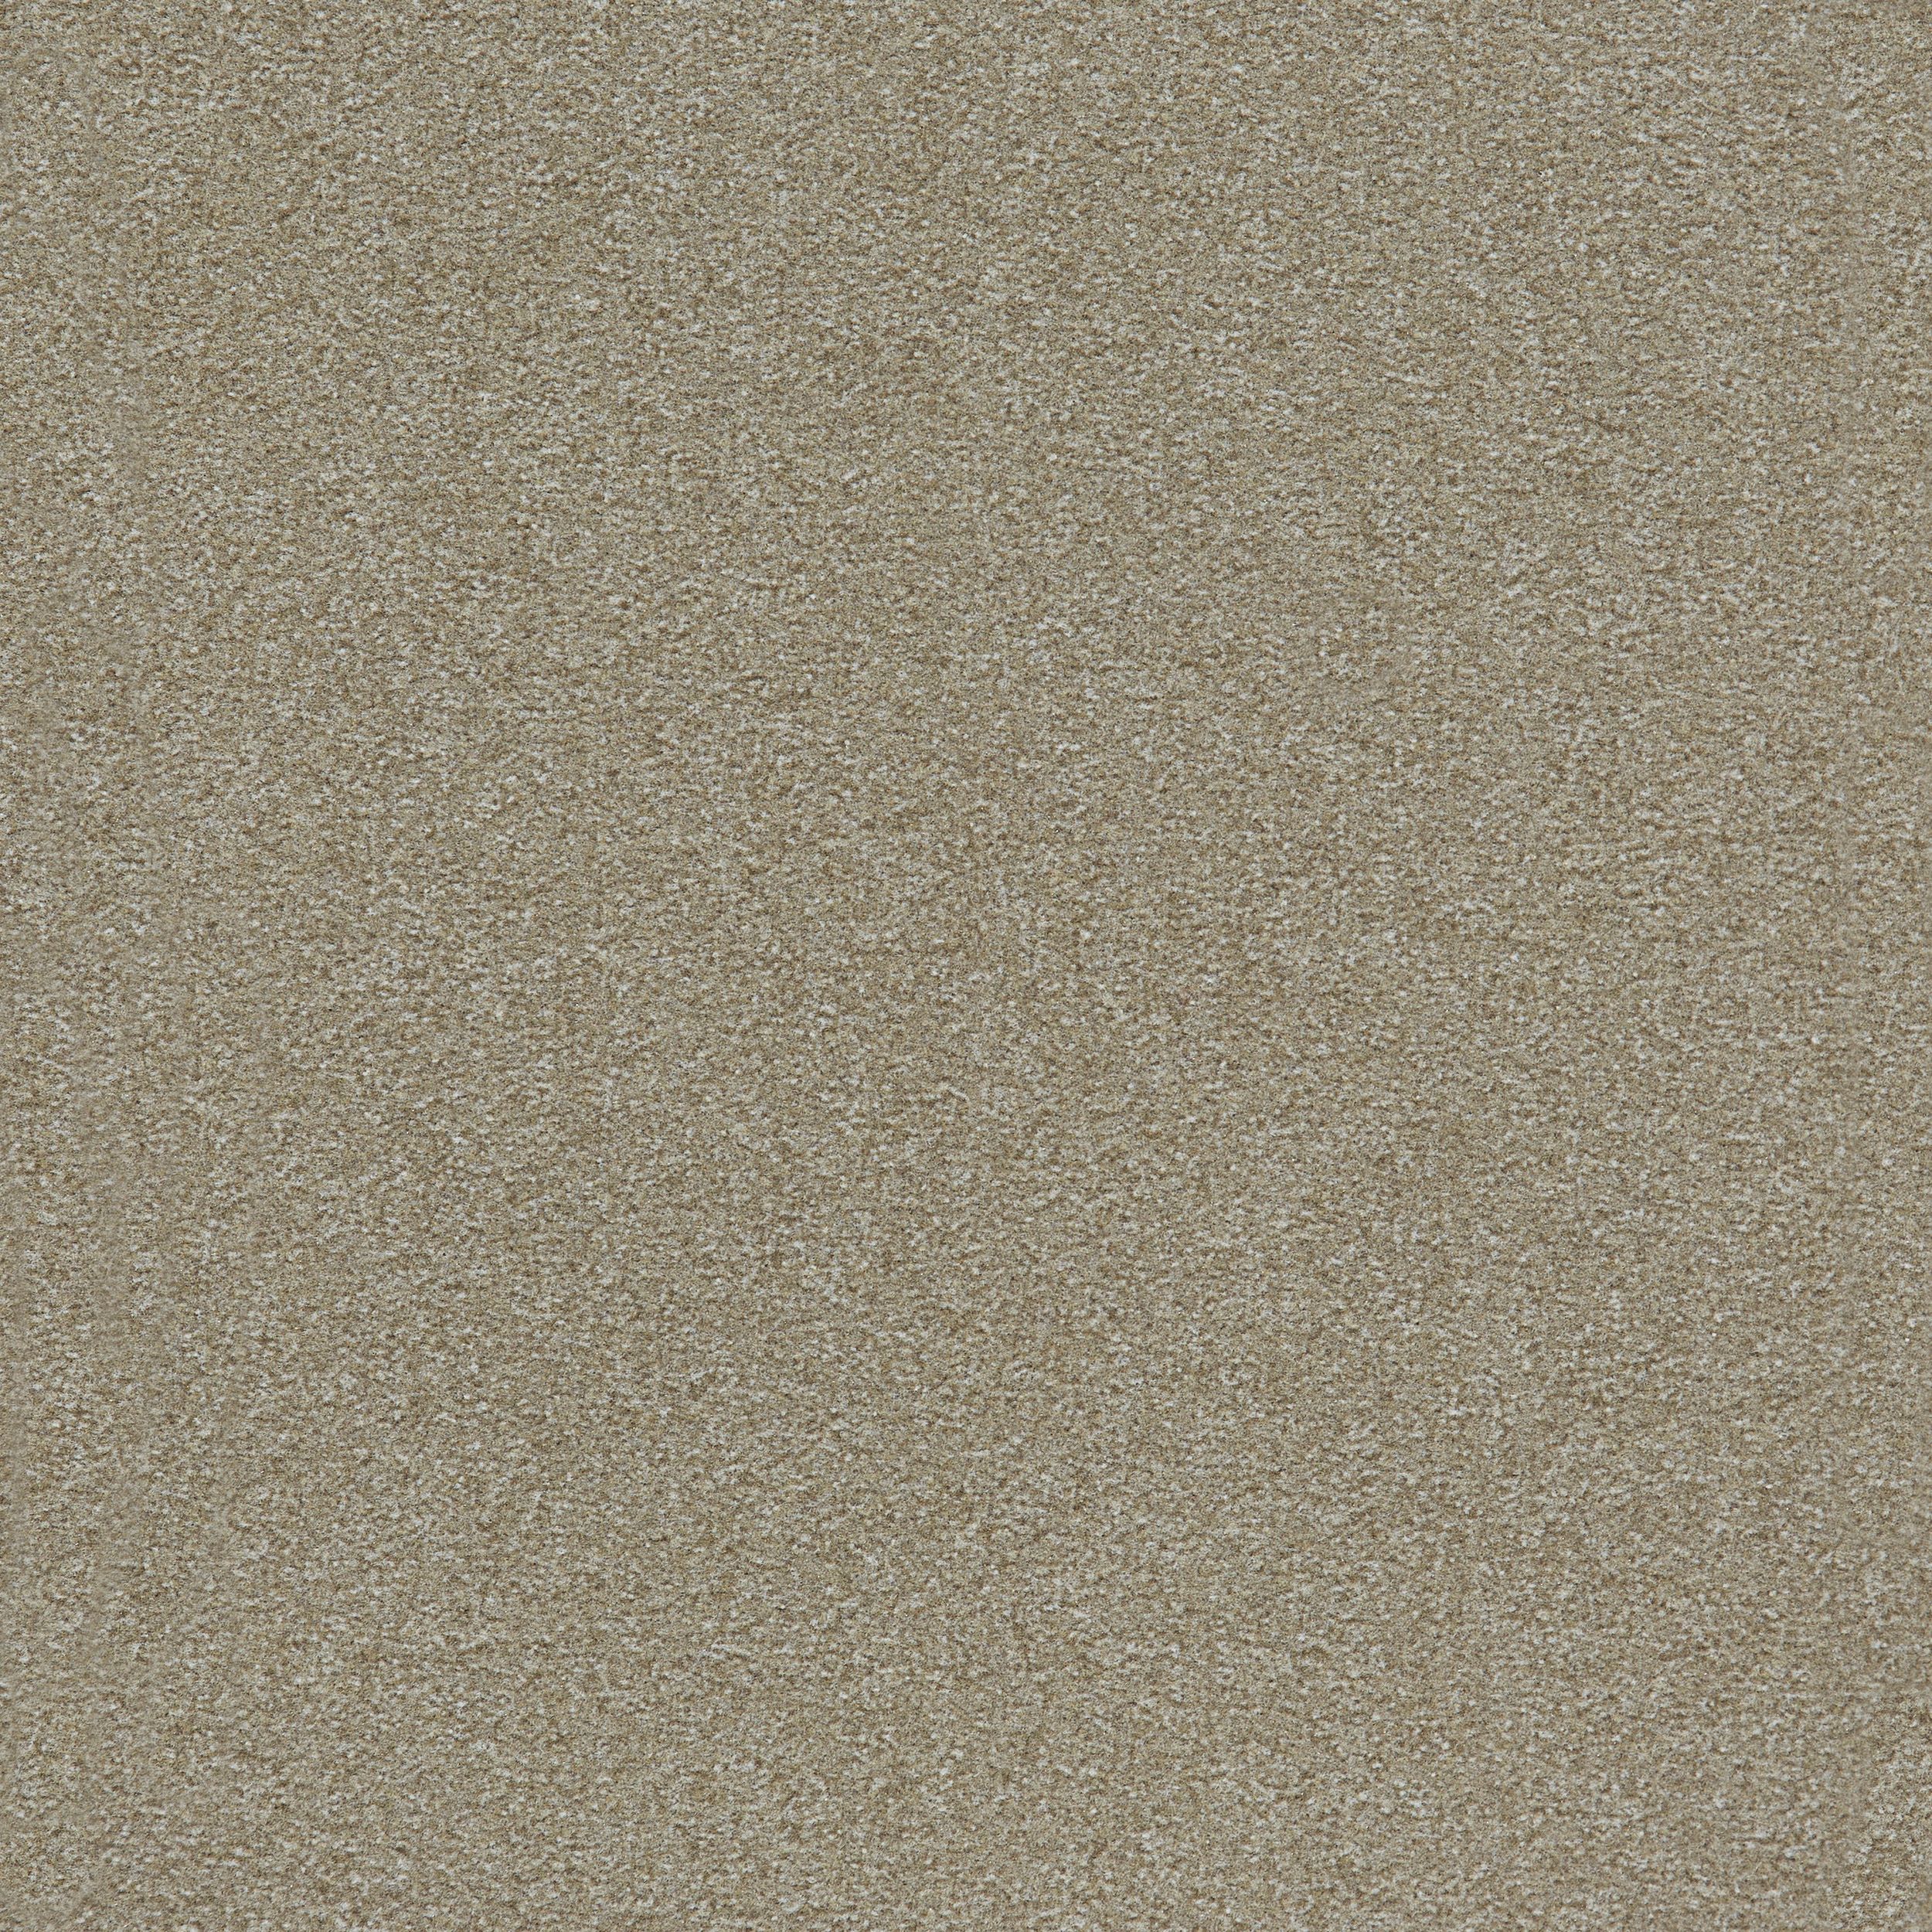 image Heuga 725 Carpet Tile In Oyster numéro 3